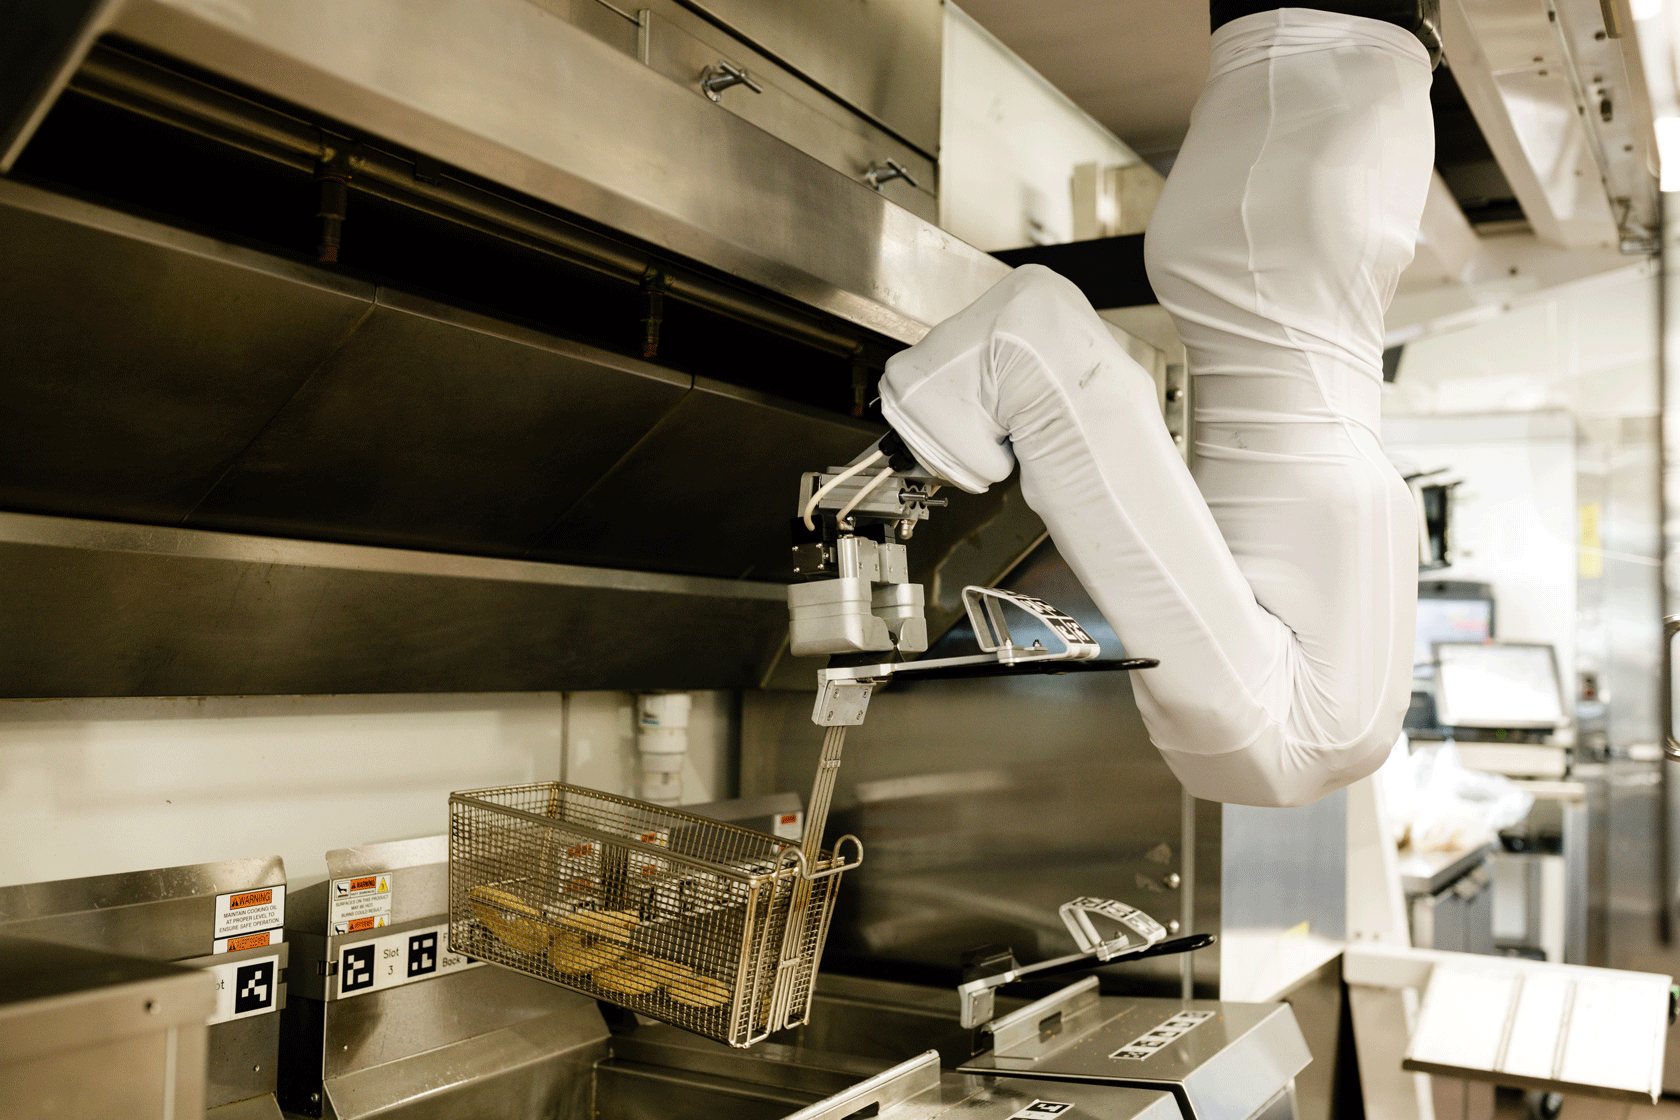 close-up of Flippy, the autonomous kitchen assistant